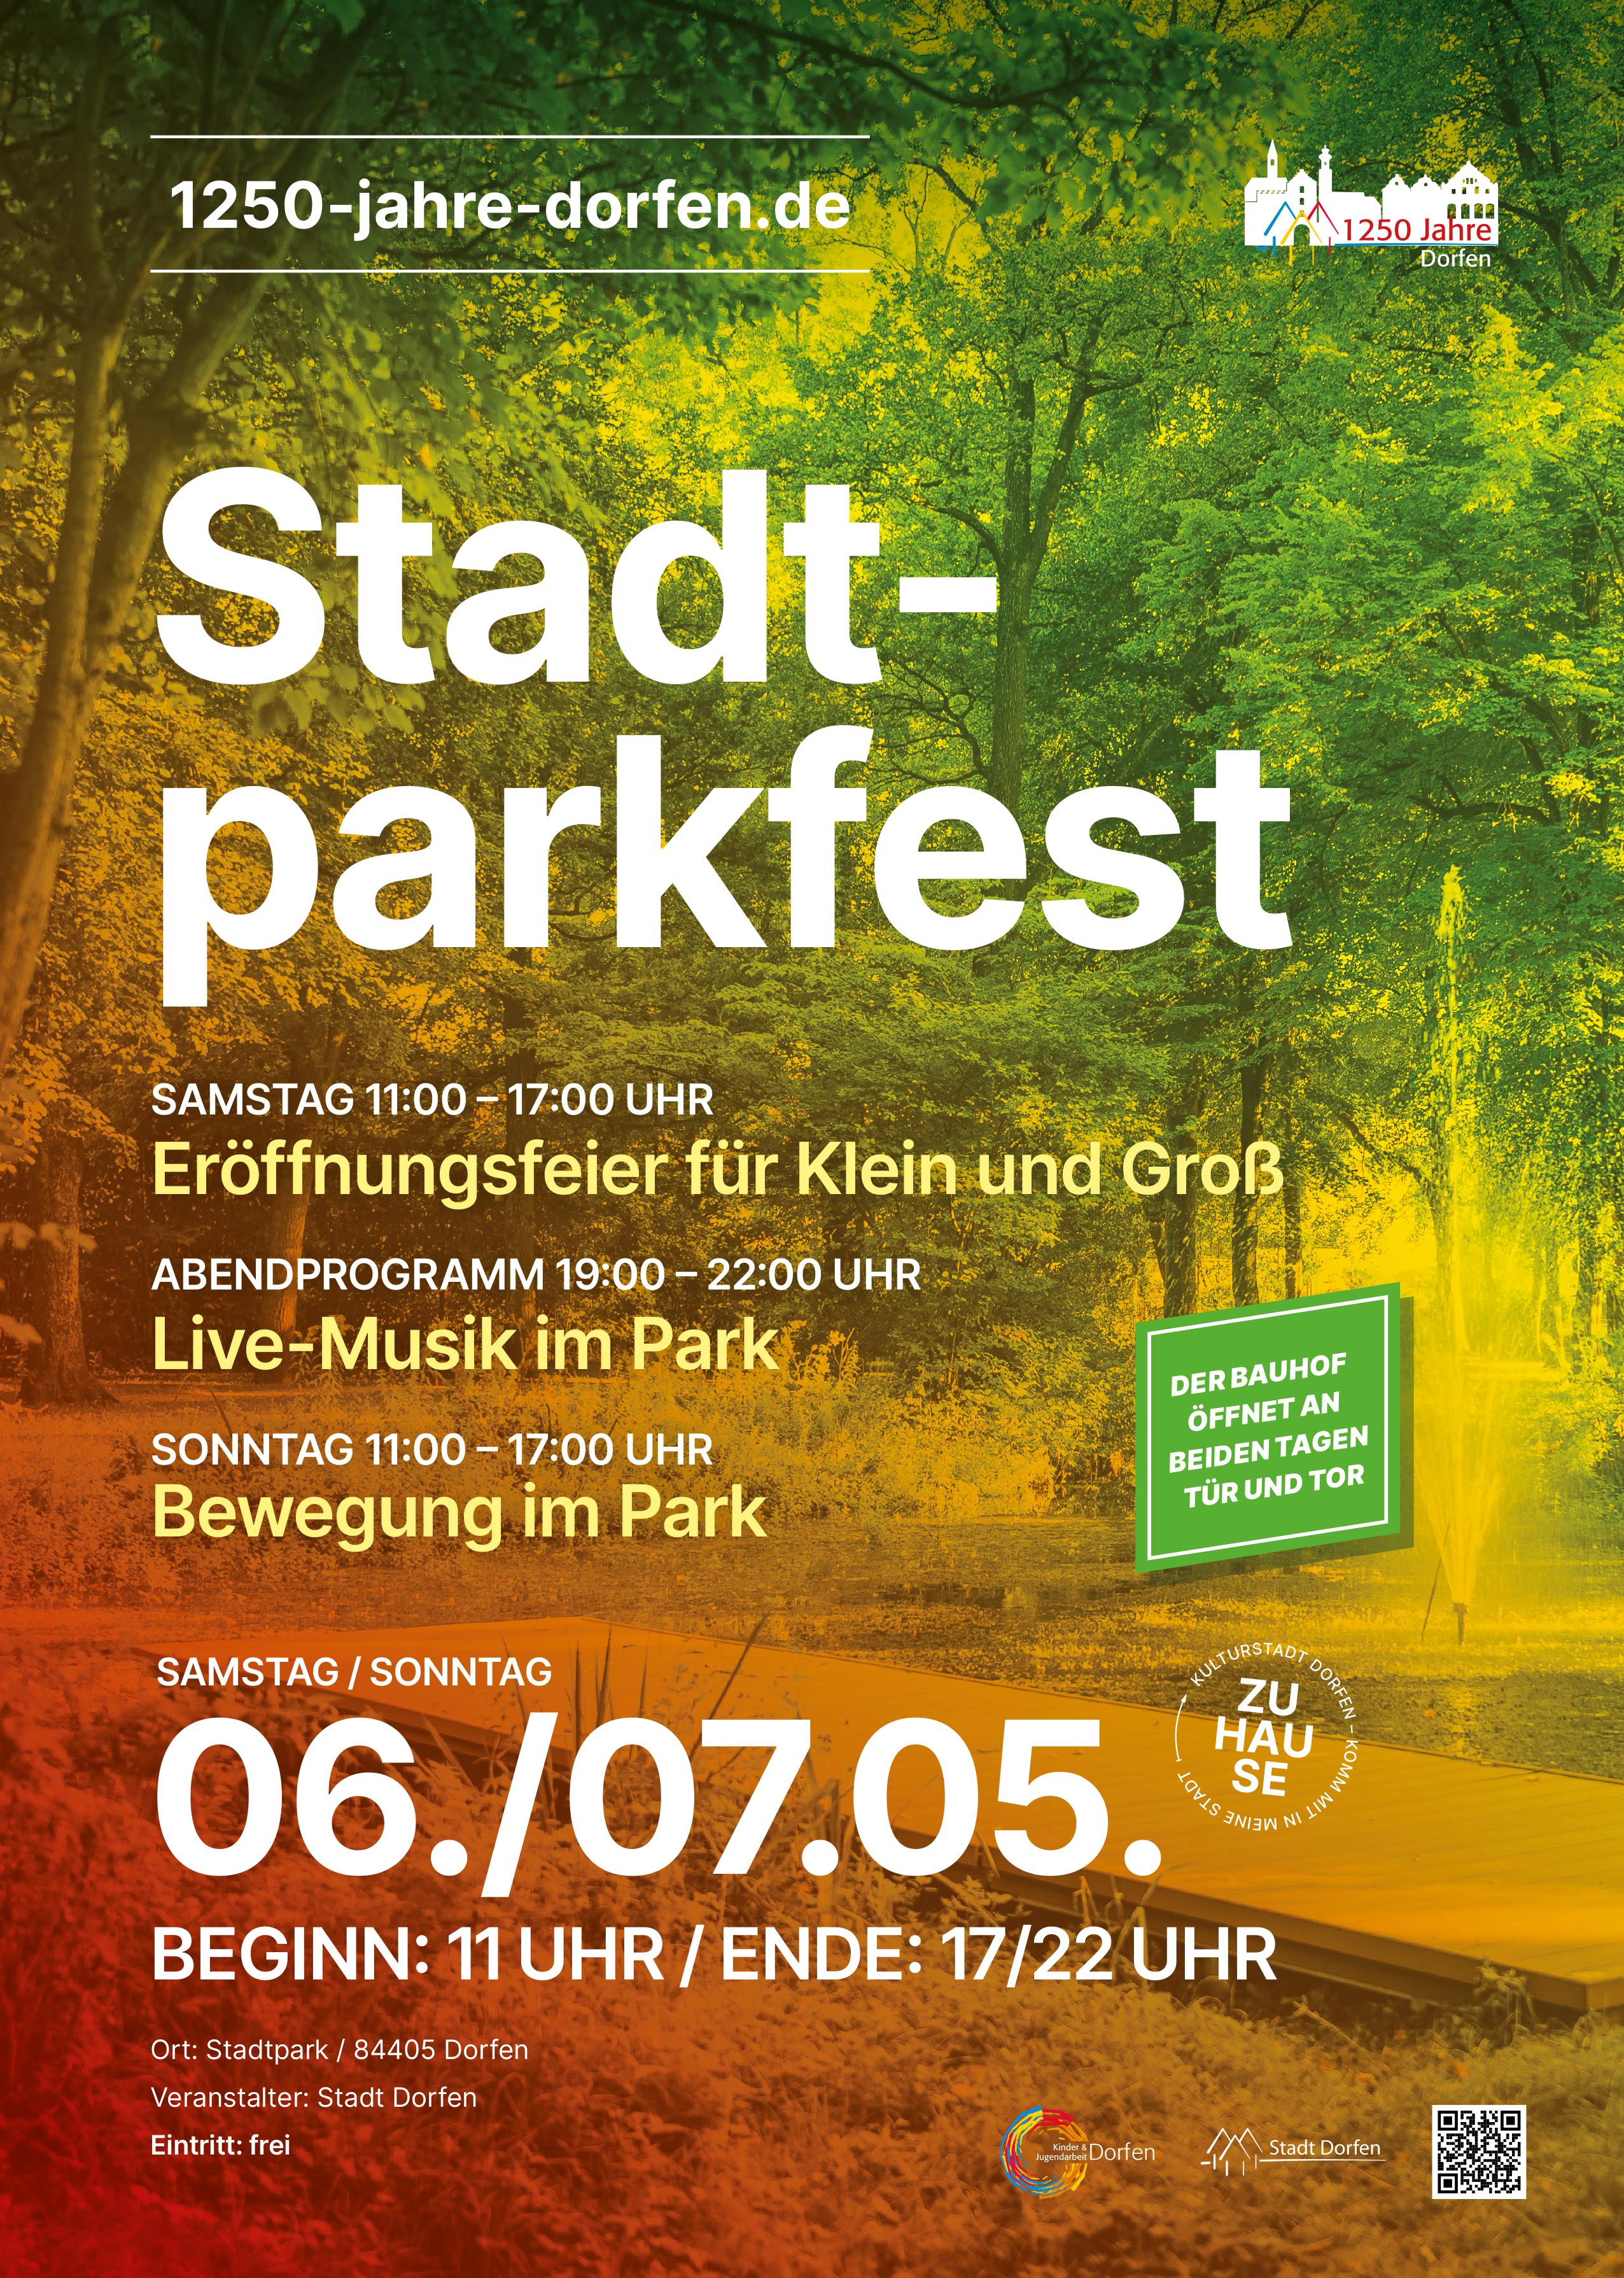 Stadtparkfest mit Eröffnungsfeier, Live-Musik und Bewegung im Park